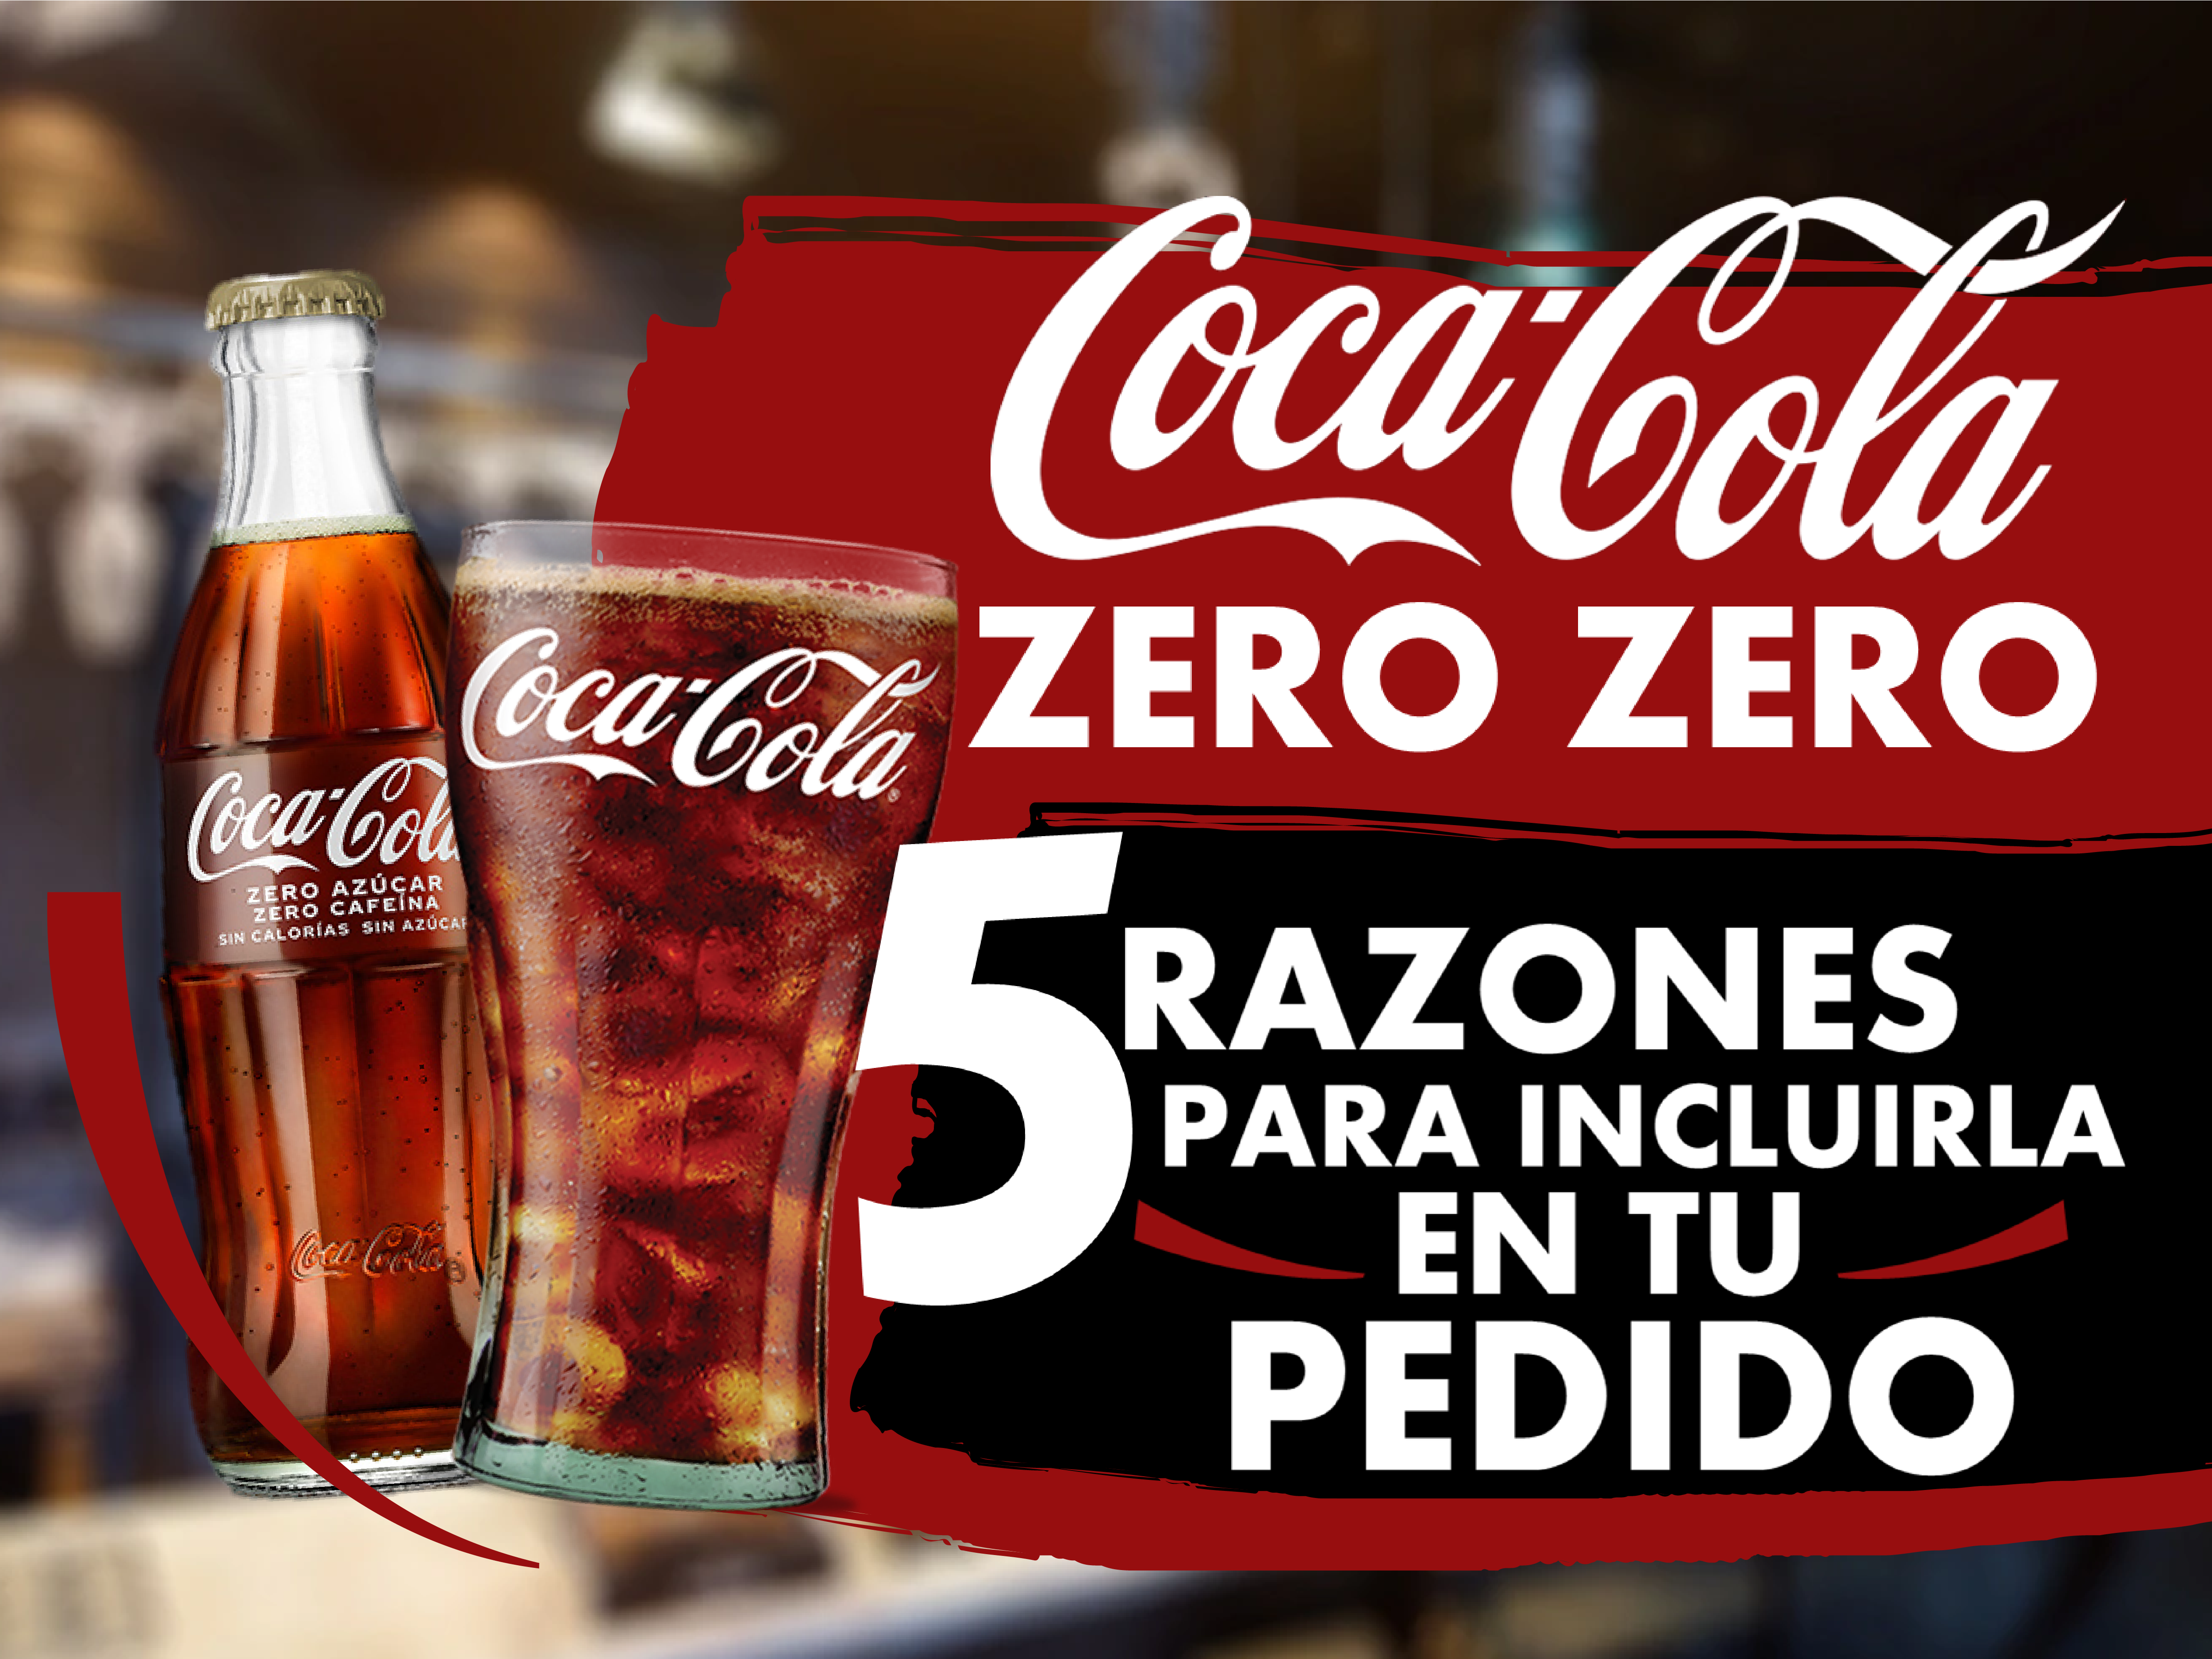 Coca-Cola Zero Zero: 5 Razones para incluirla en tu pedido – Carreta  Distribuciones: casi todo para el profesional de la hostelería